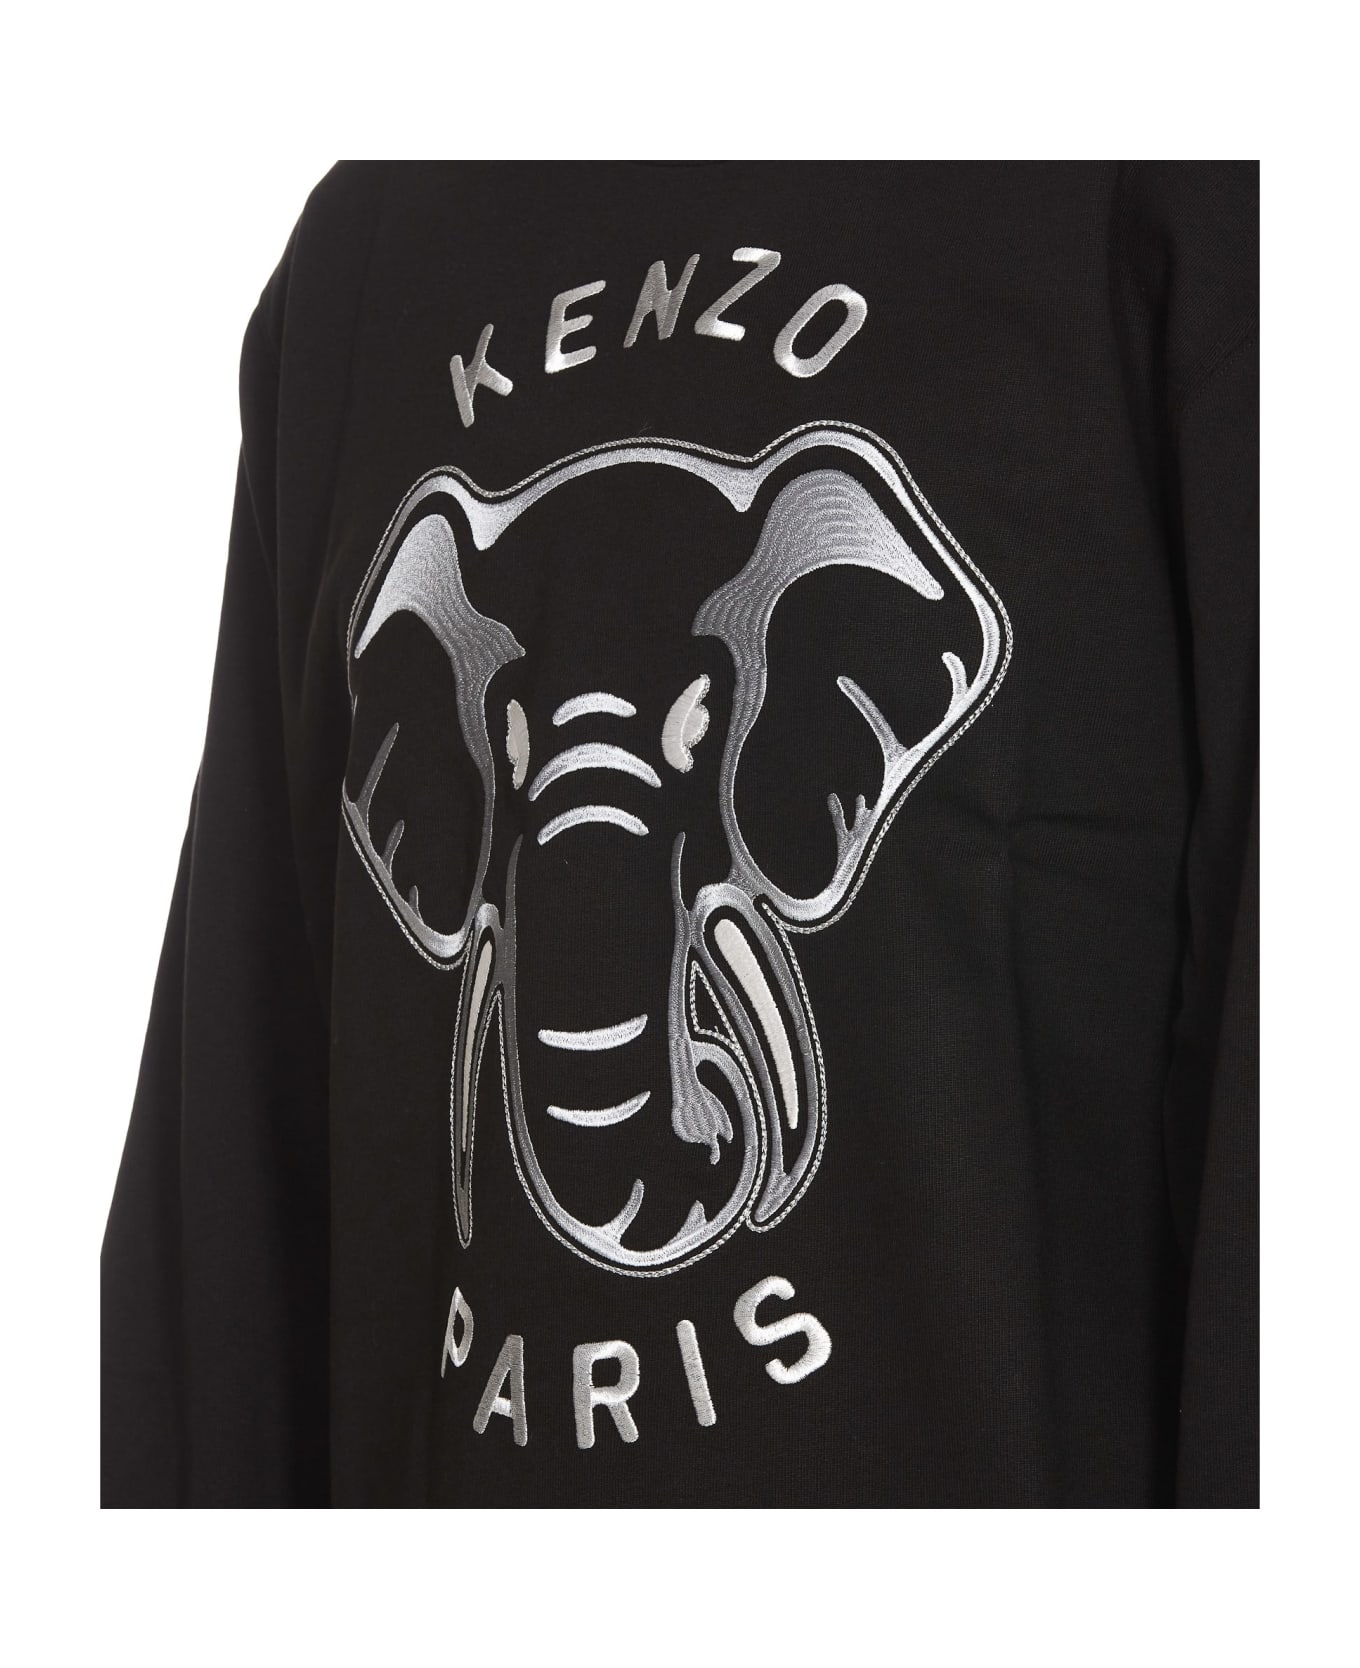 Kenzo Elephant Sweatshirt - Black